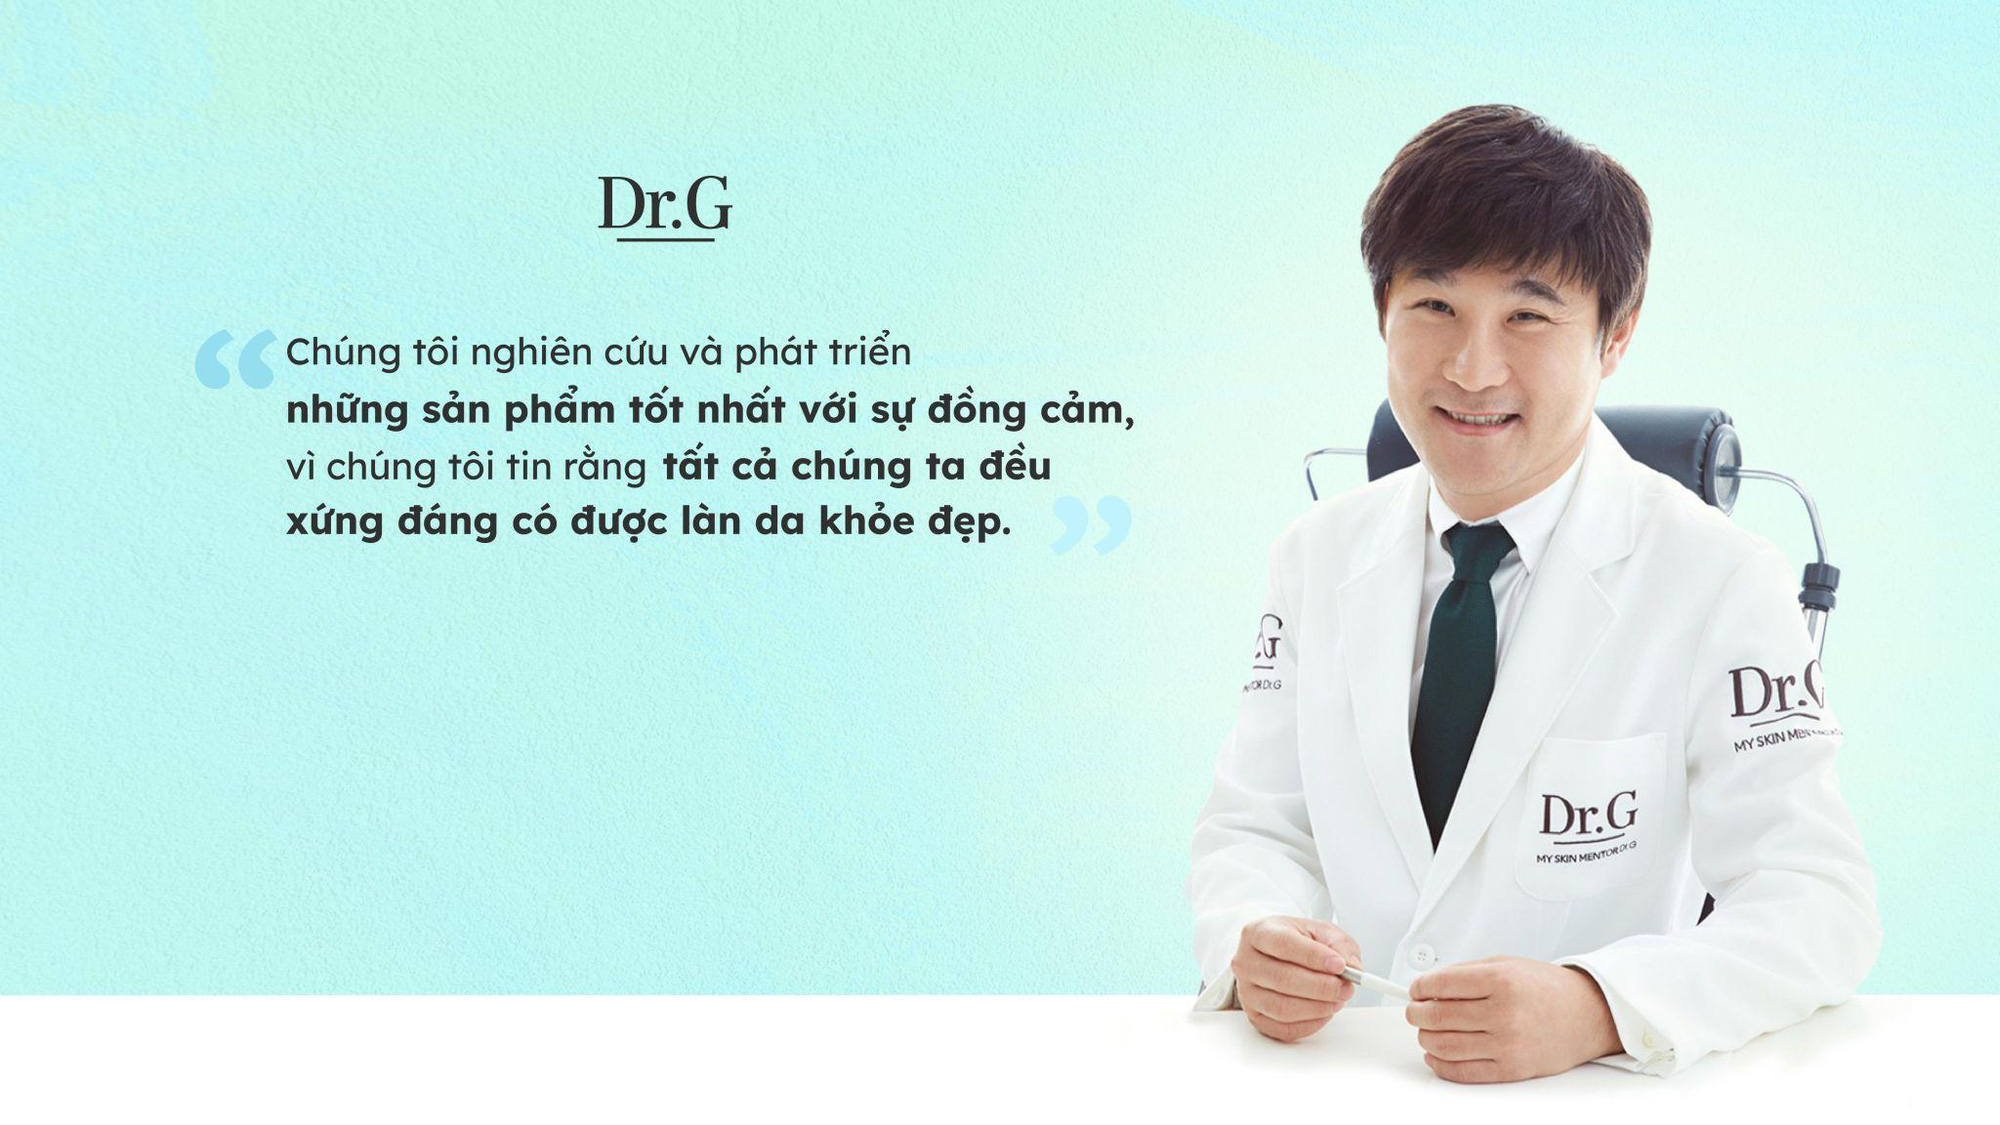 Song Joong Ki đến Việt Nam cùng Dr.G - Dược mỹ phẩm hàng đầu Hàn Quốc - Ảnh 2.